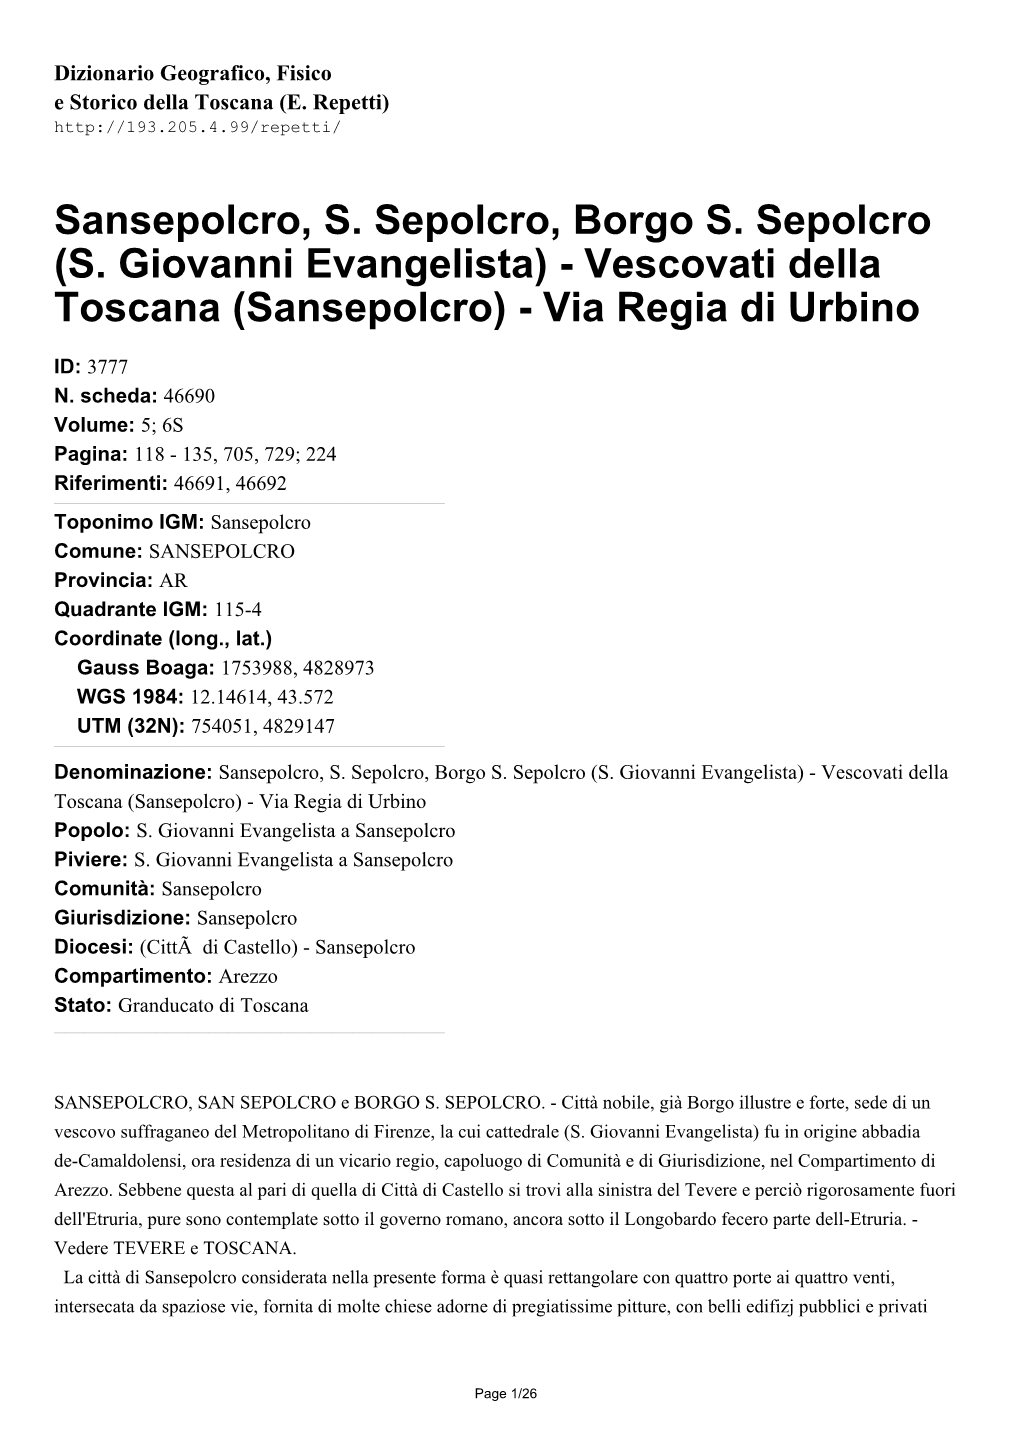 (S. Giovanni Evangelista) - Vescovati Della Toscana (Sansepolcro) - Via Regia Di Urbino